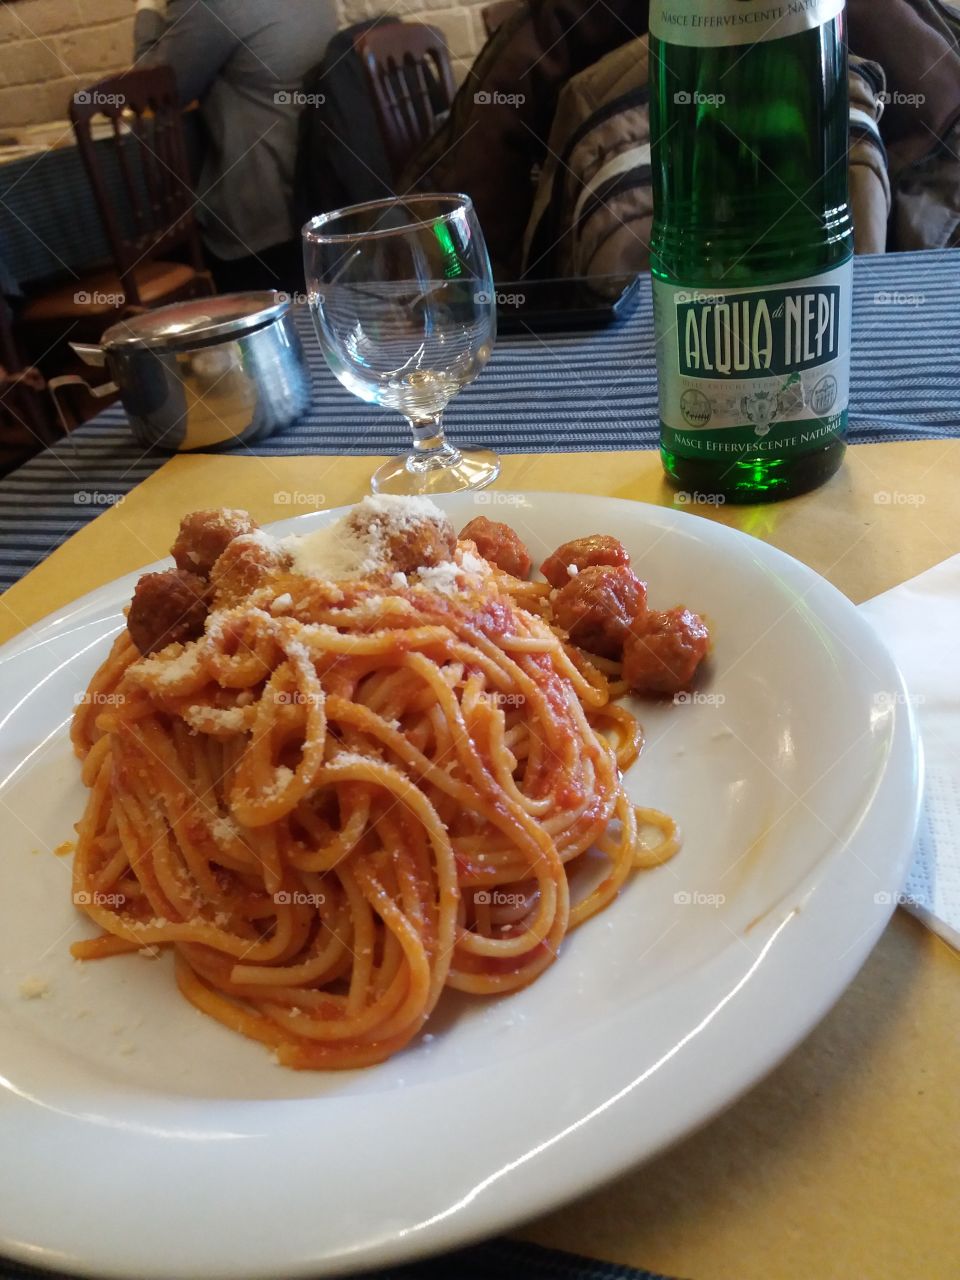 Italian lunch